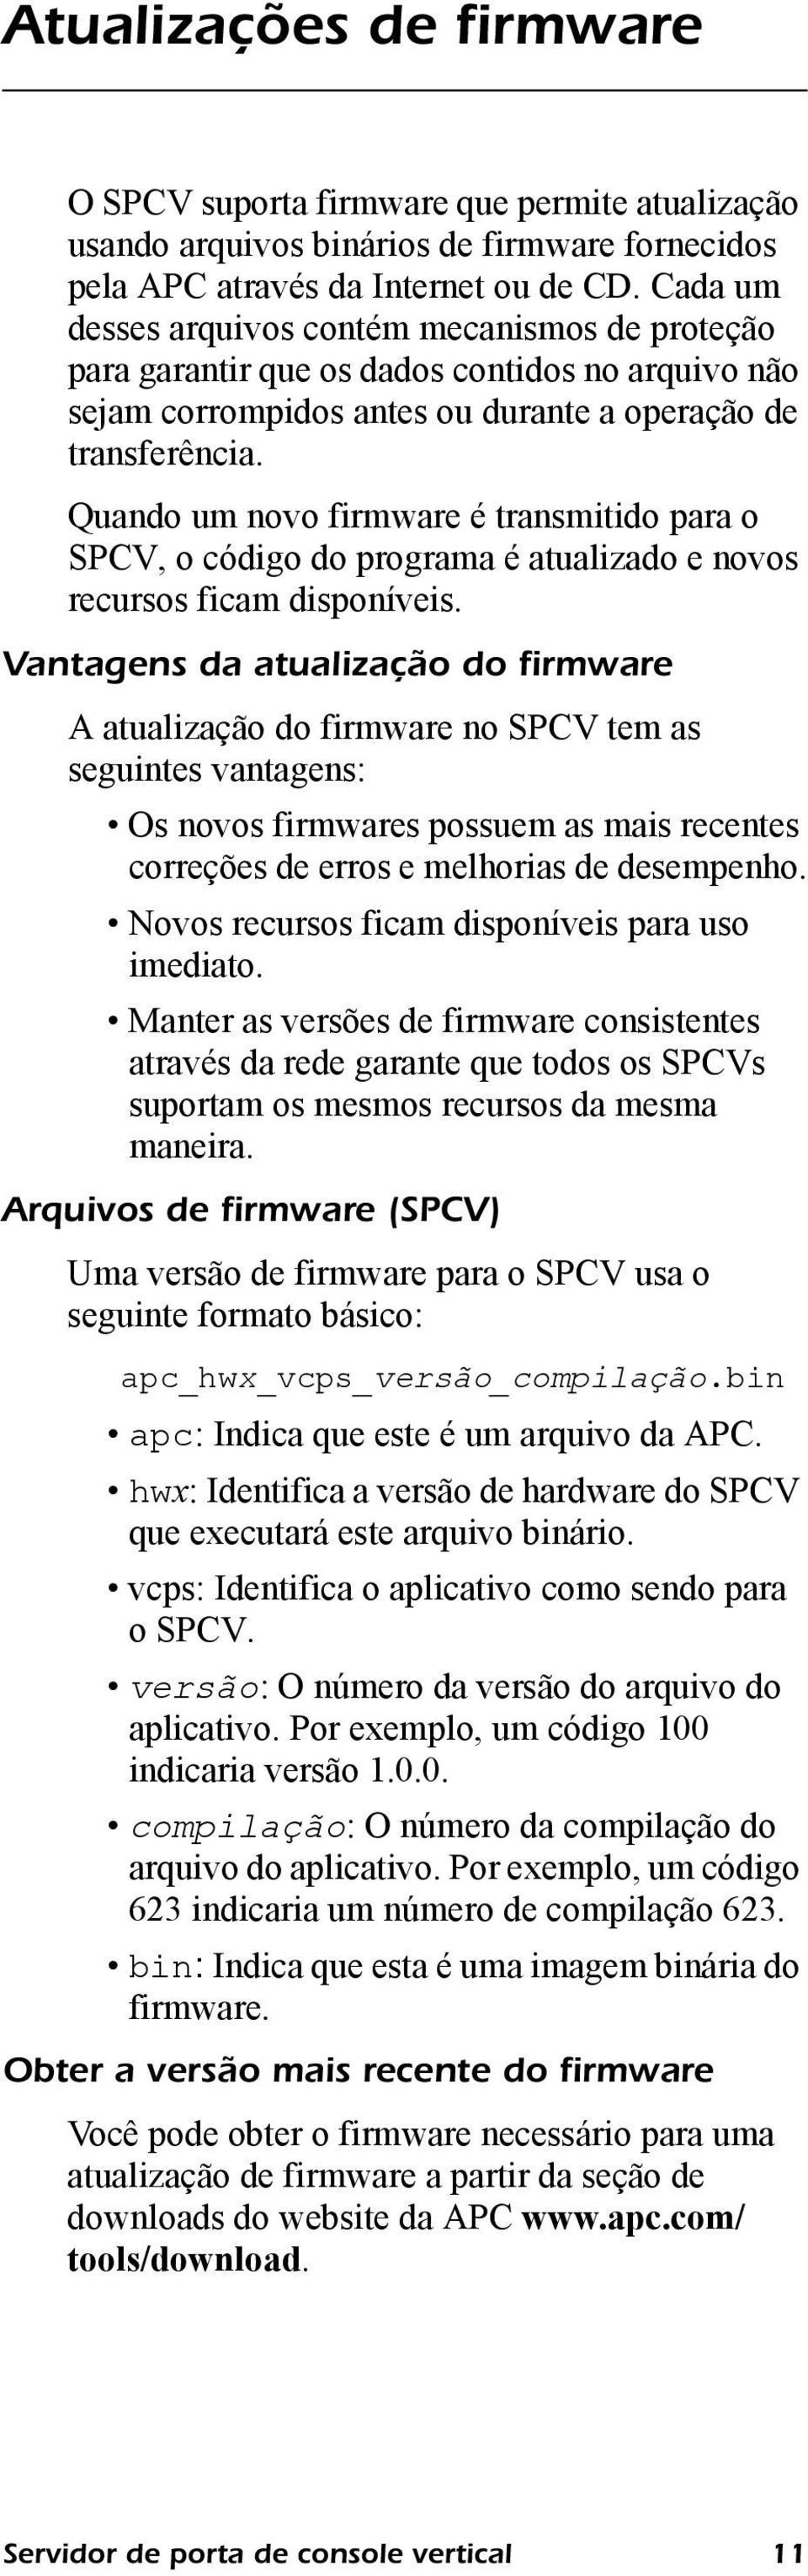 Quando um novo firmware é transmitido para o SPCV, o código do programa é atualizado e novos recursos ficam disponíveis.